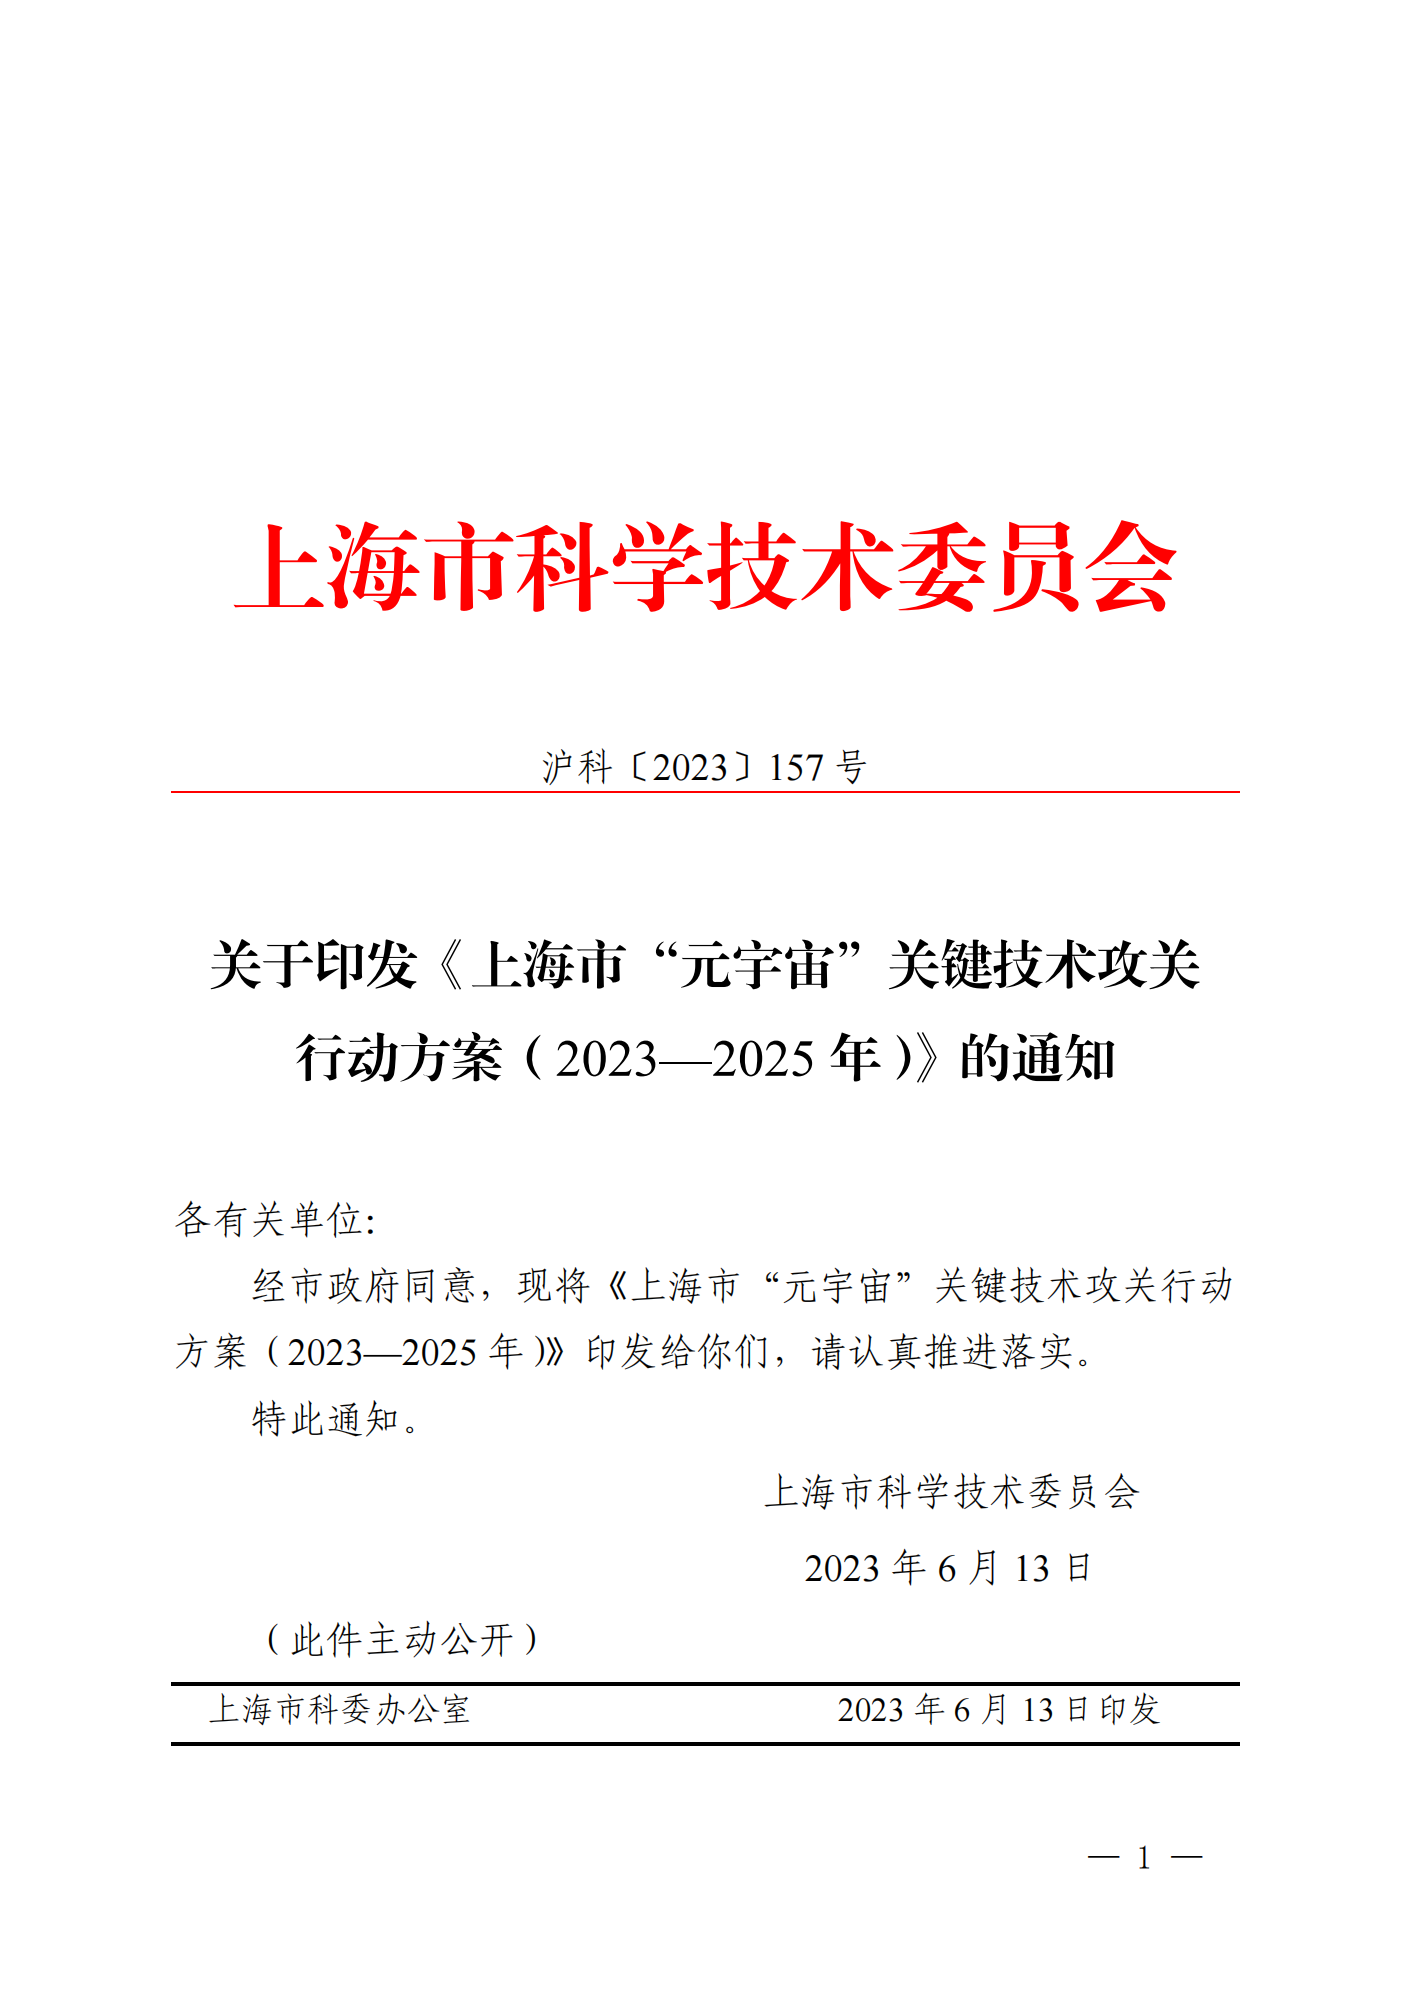 《上海市“元宇宙”关键技术攻关行动方案（2023—2025年）》发布